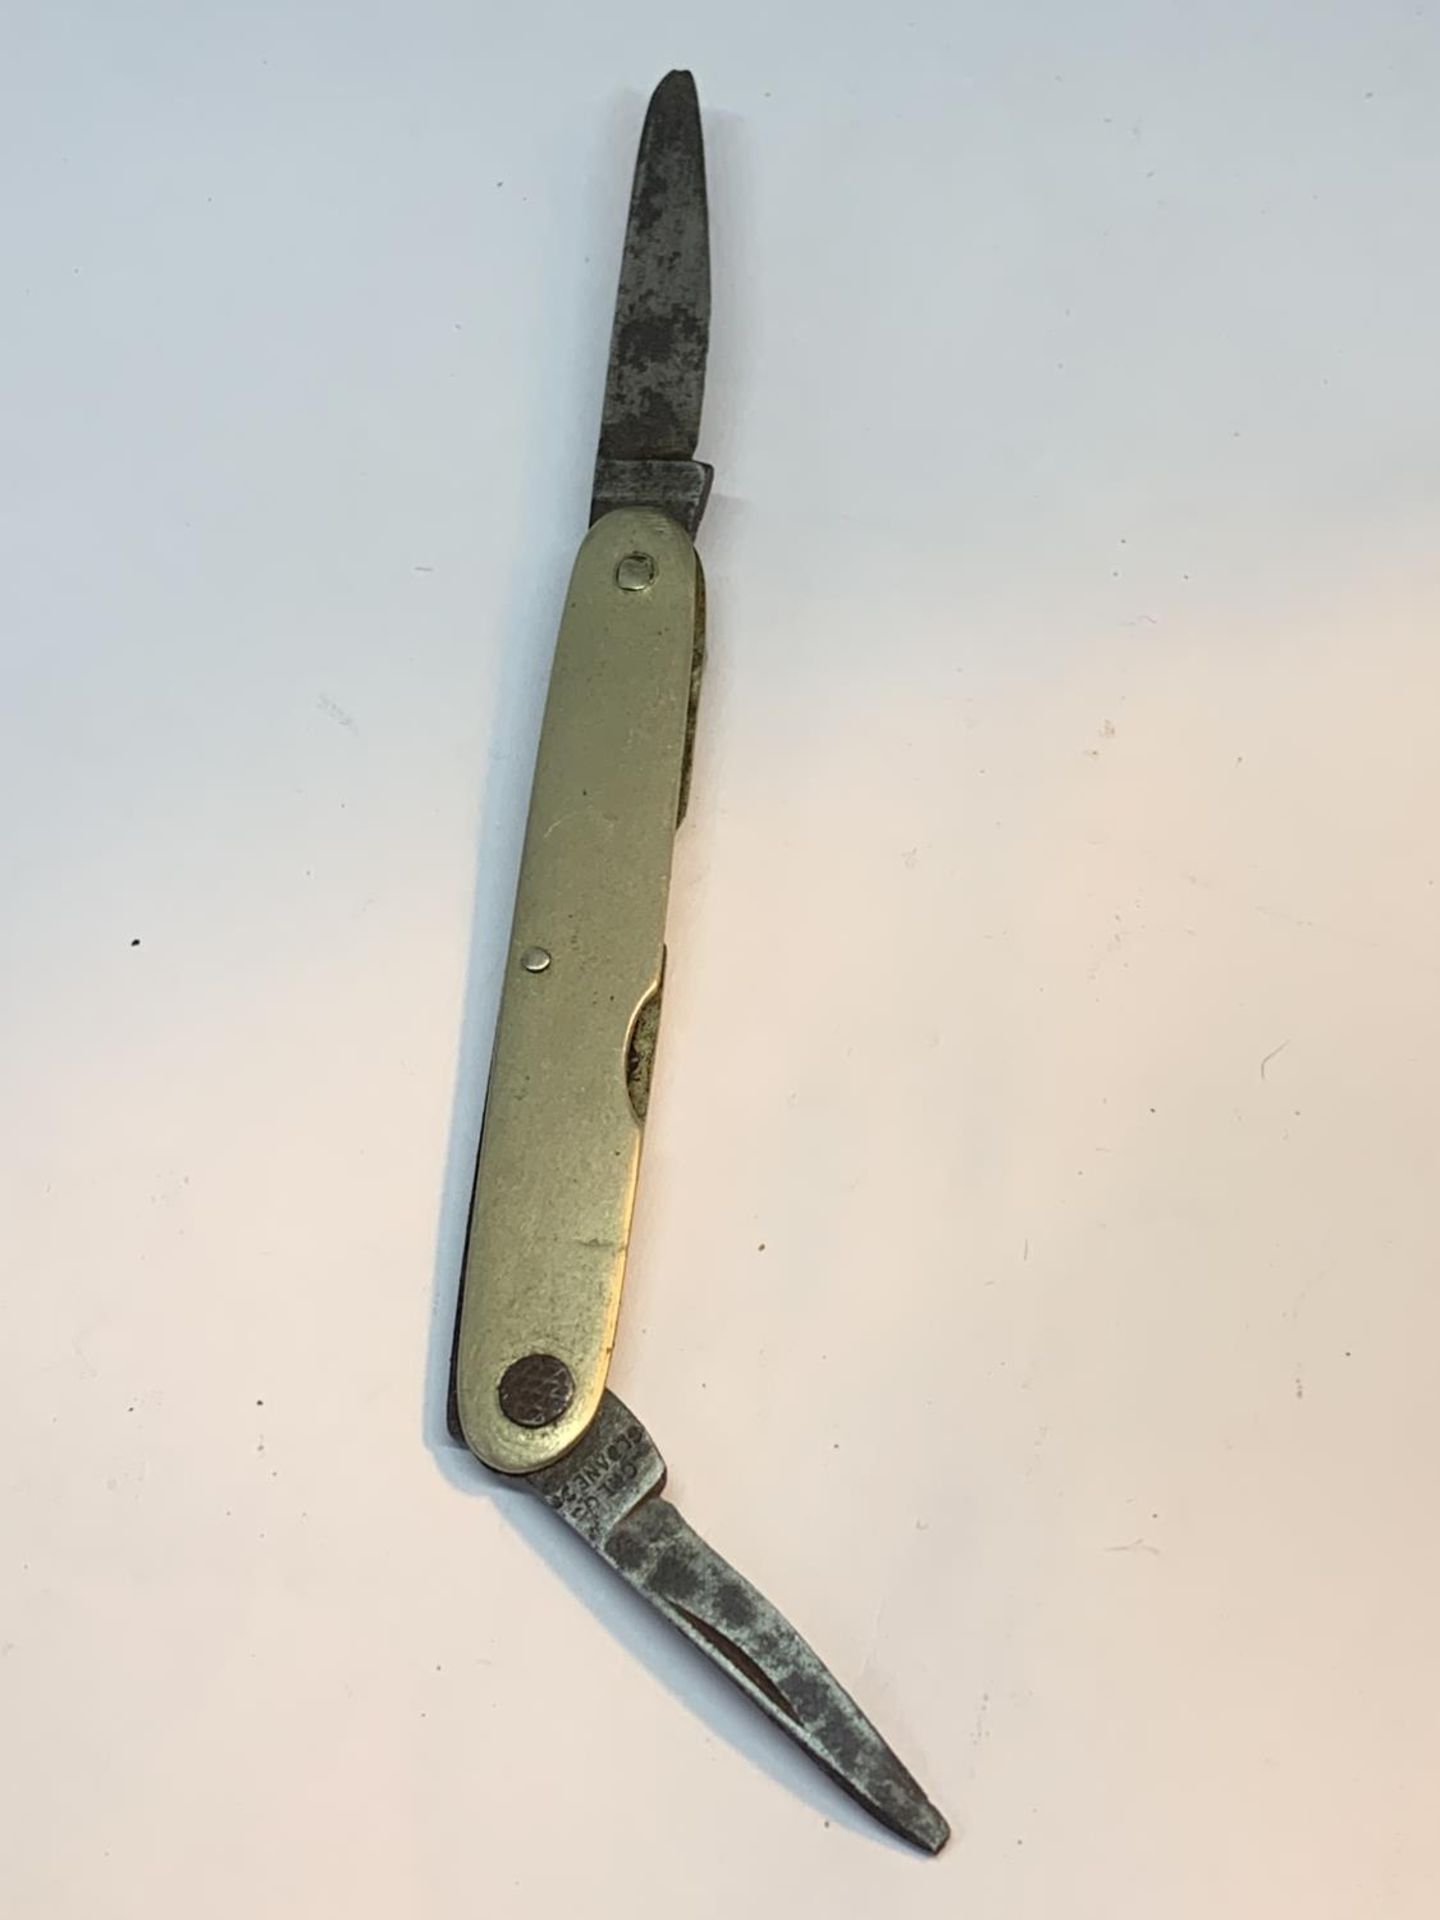 AN ANTIQUE J GREGG 27 SLOANE SQUARE POCKET KNIFE - Image 2 of 4